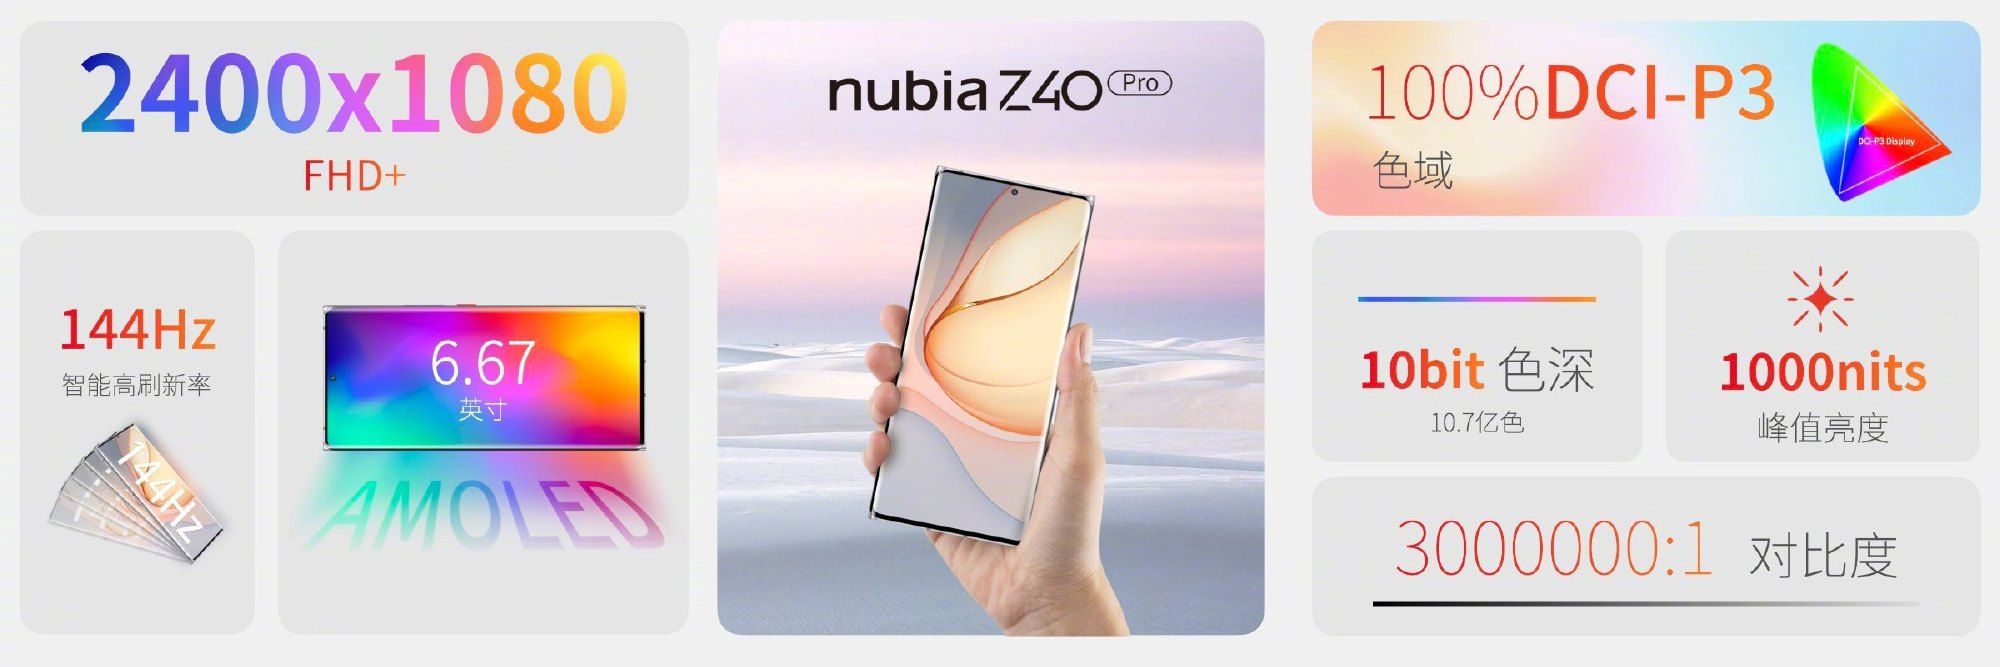 安卓首款无线磁吸充电手机，努比亚 Z40 Pro 正式发布